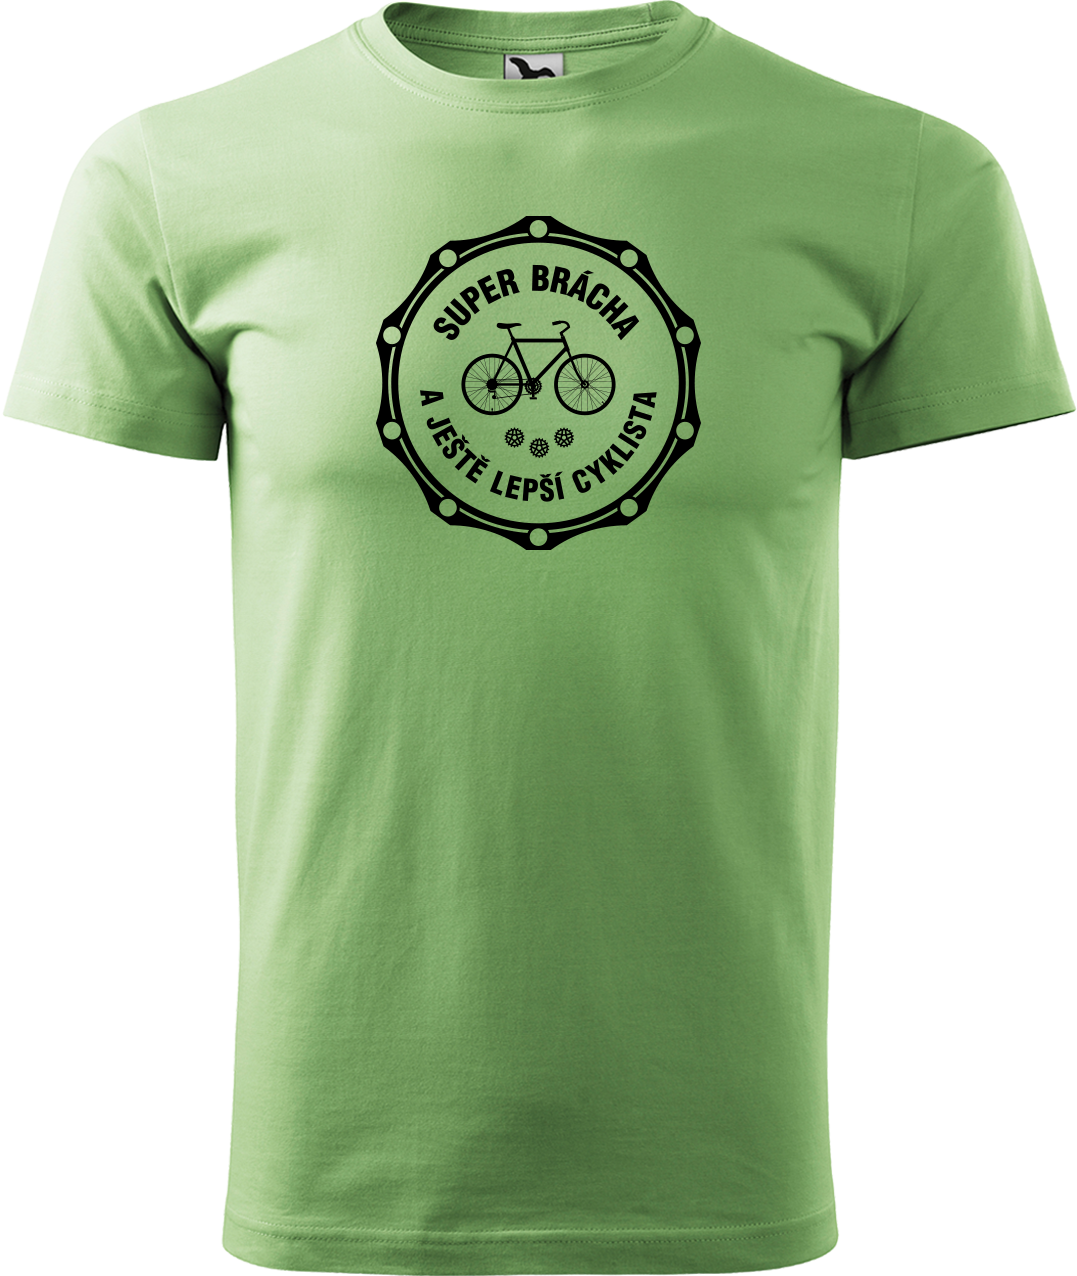 Pánské tričko pro cyklistu - Super brácha a ještě lepší cyklista Velikost: S, Barva: Trávově zelená (39)